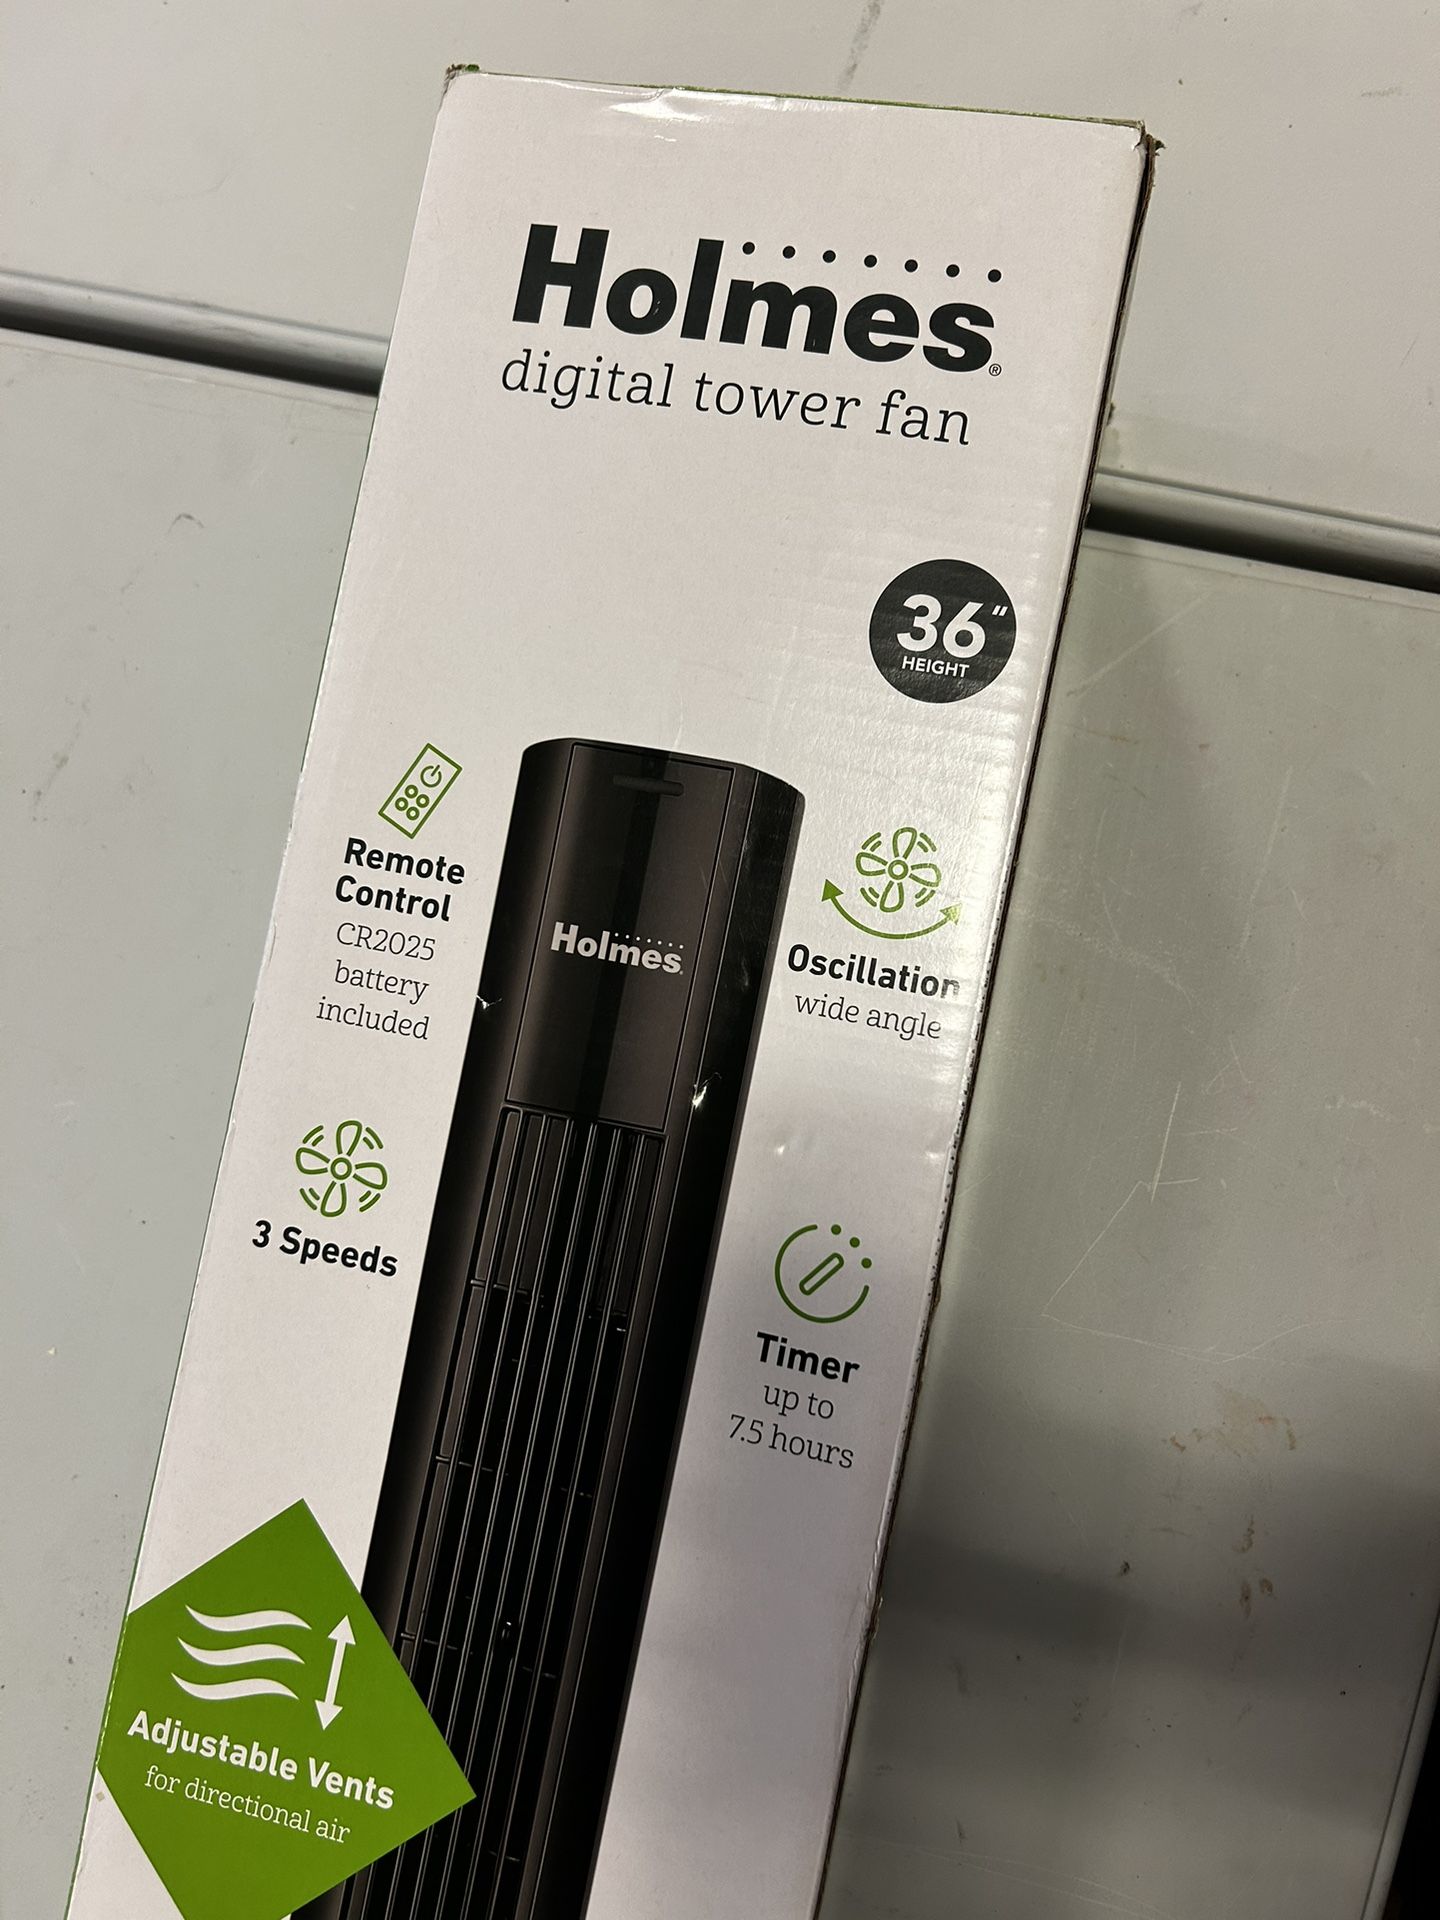 Holmes Digital Tower Fan